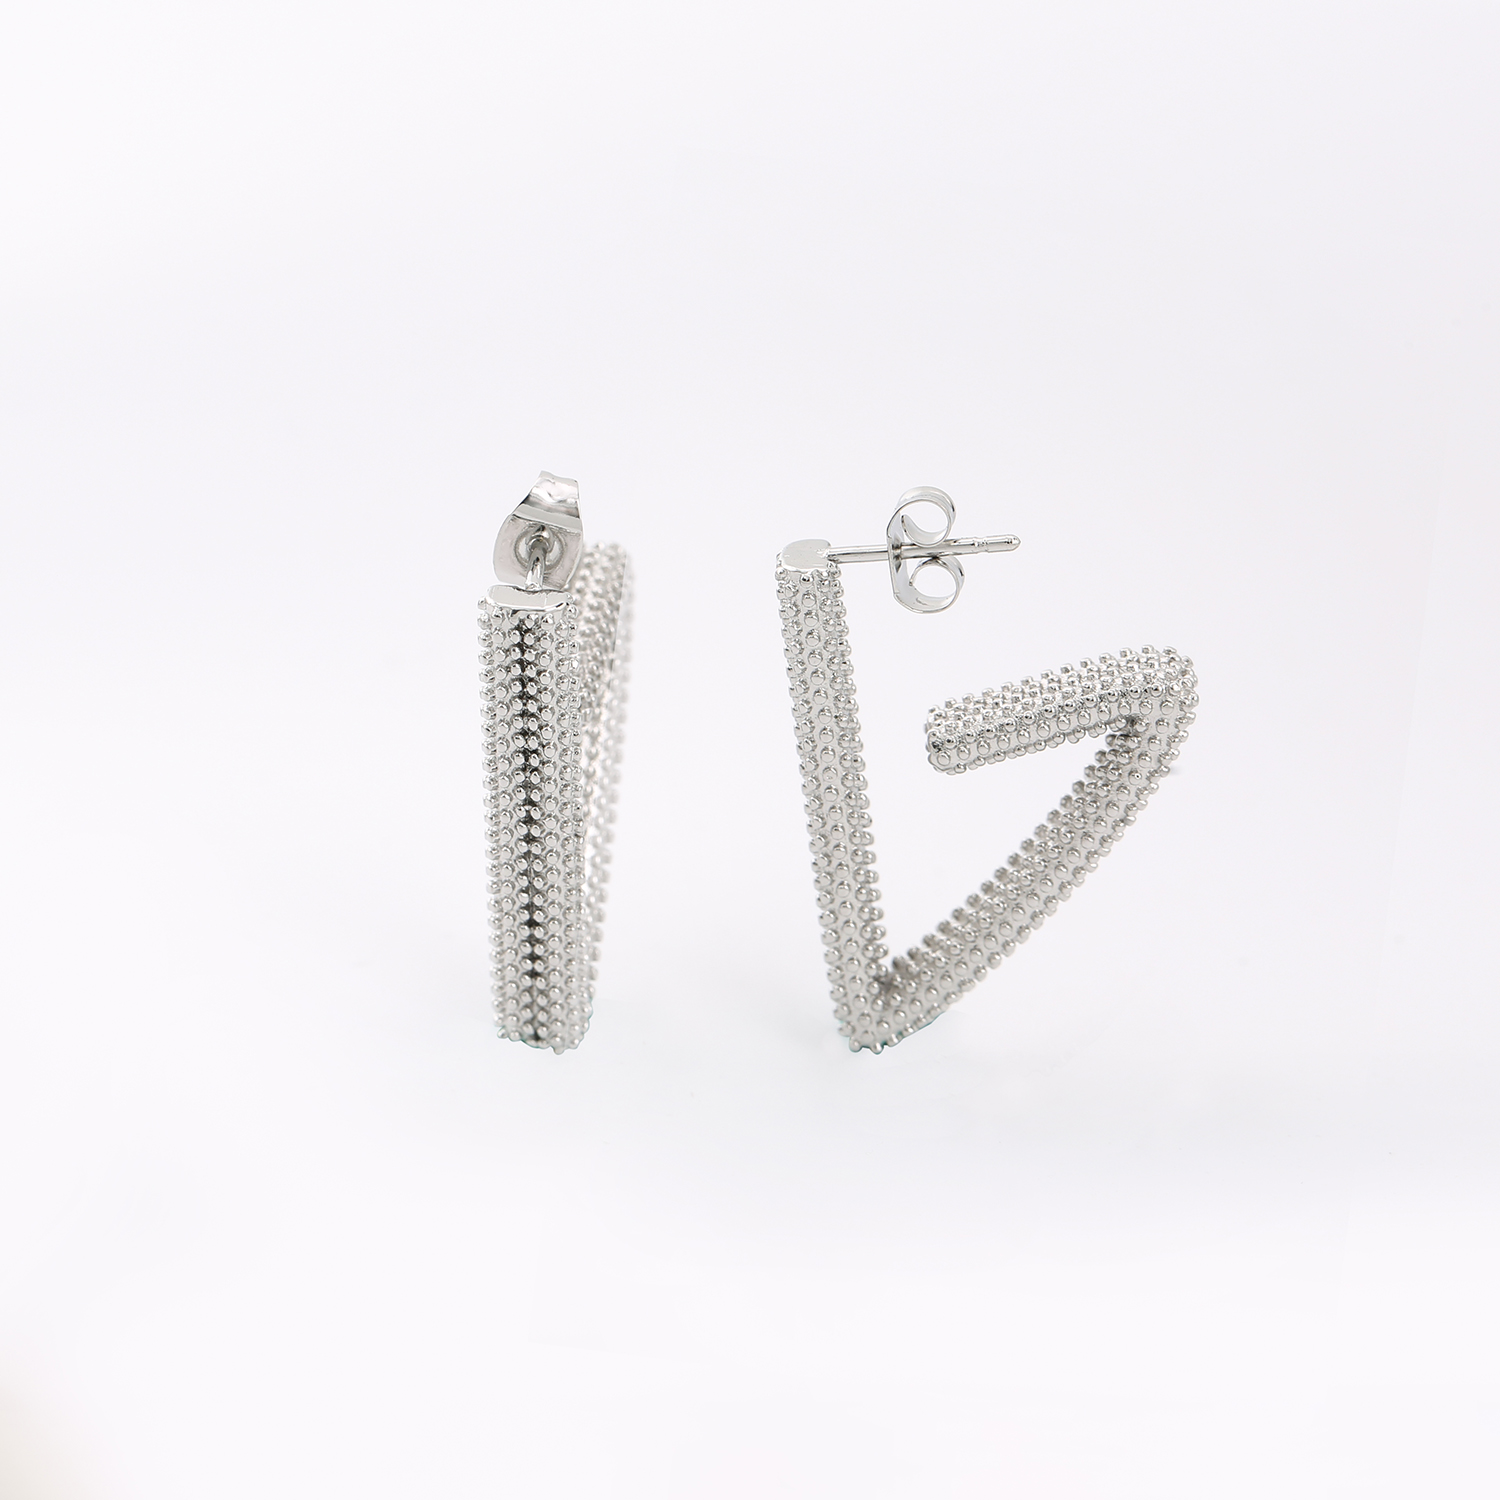 Triangle Design Geometric Shape Stud Earrings Wholesale Handcrafted 14k Gold Earrings